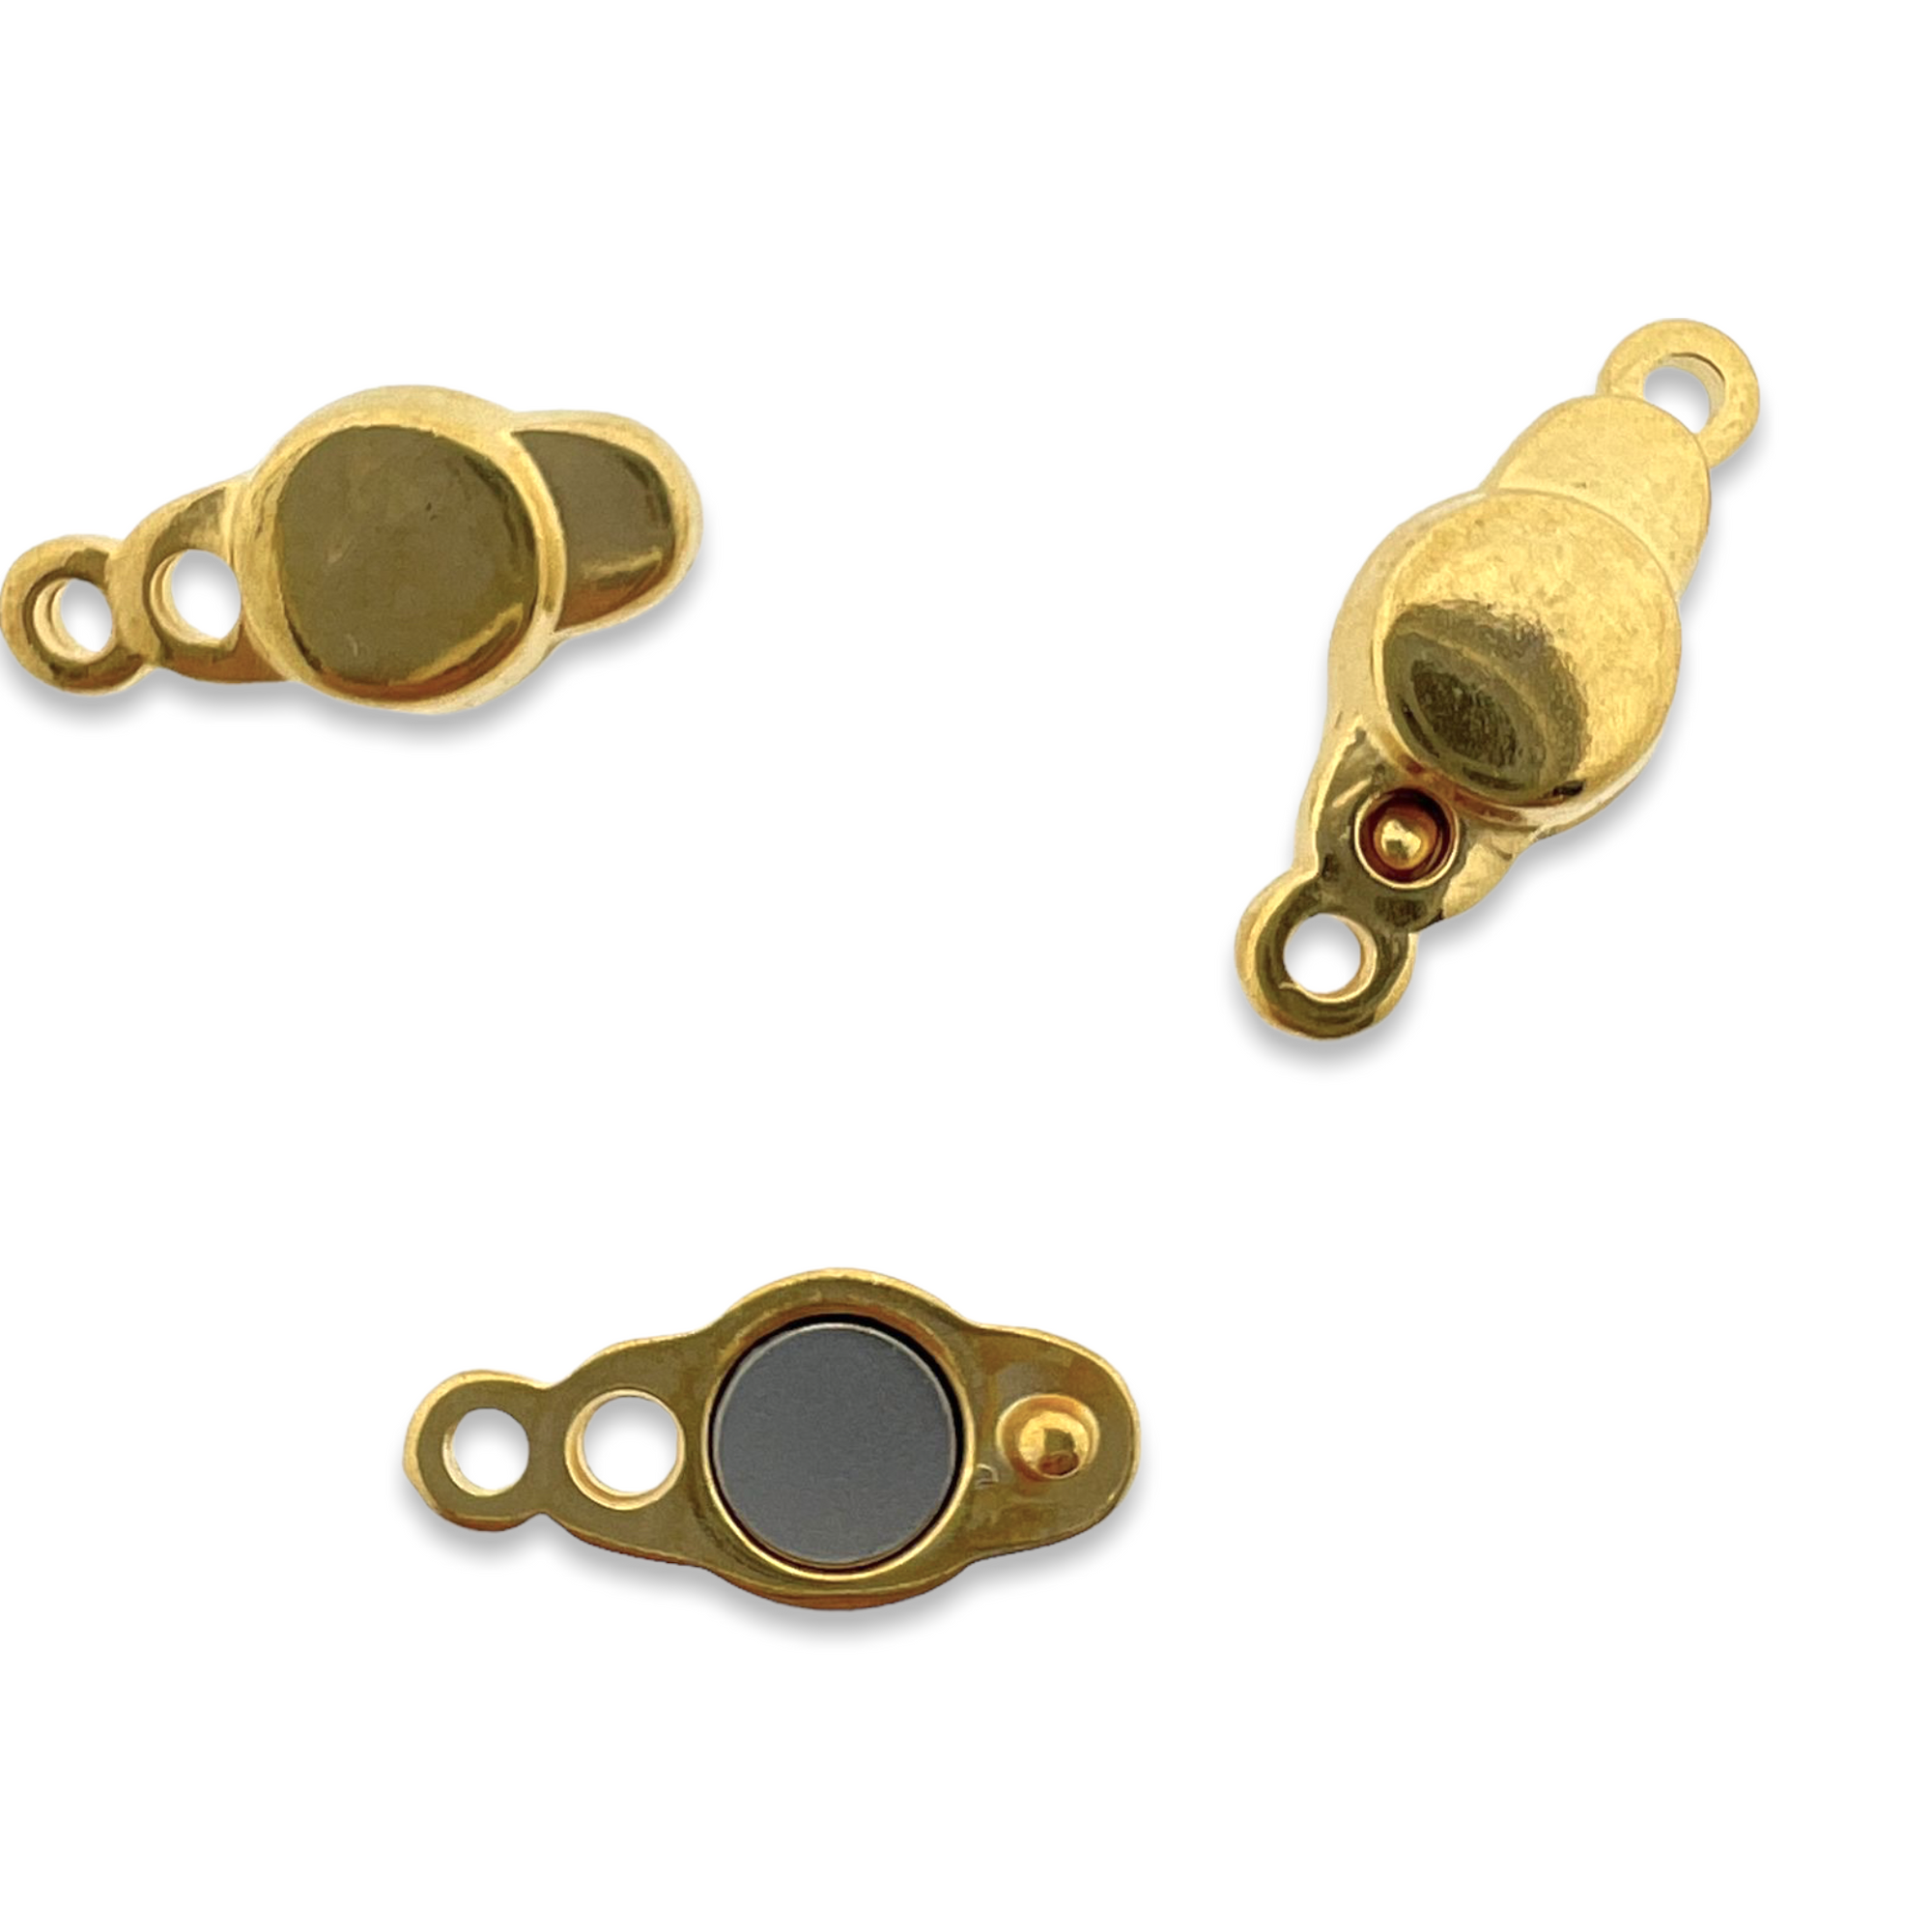 Magneetsluiting goud DQ 17x7mm-bedels-Kraaltjes van Renate